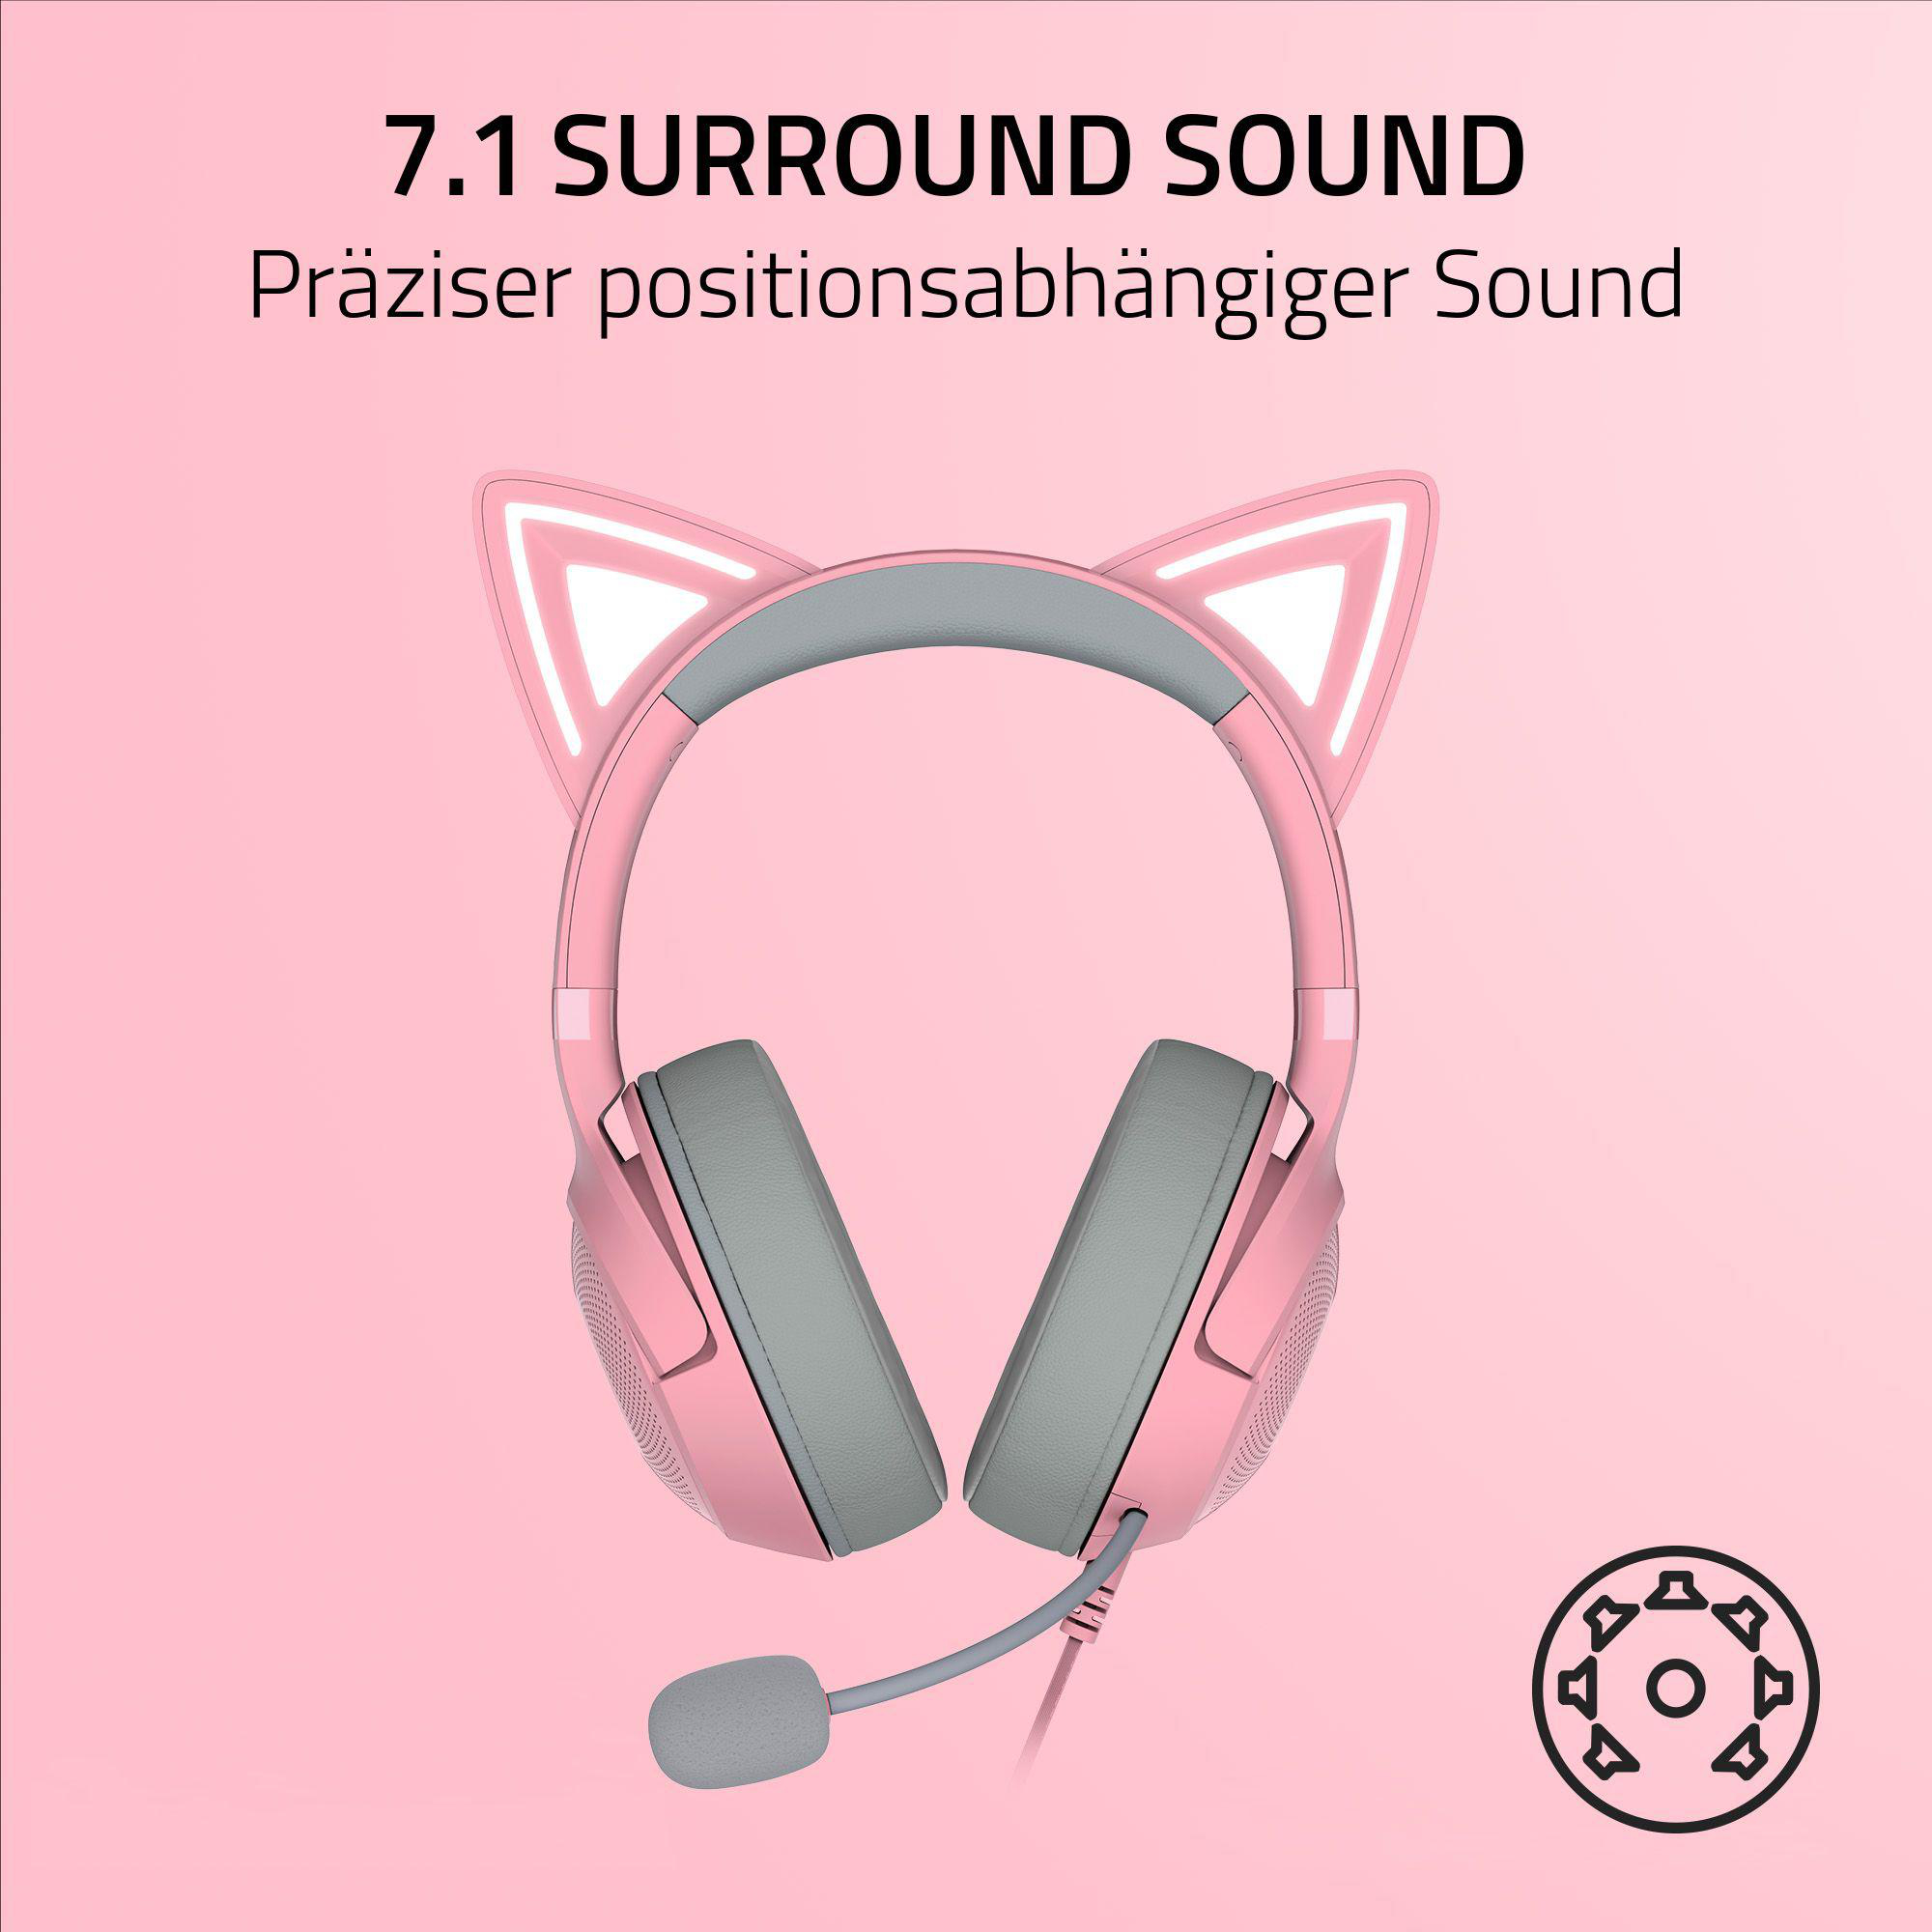 RAZER Kraken Gaming Over-ear Kitty V2, Headset Quartz